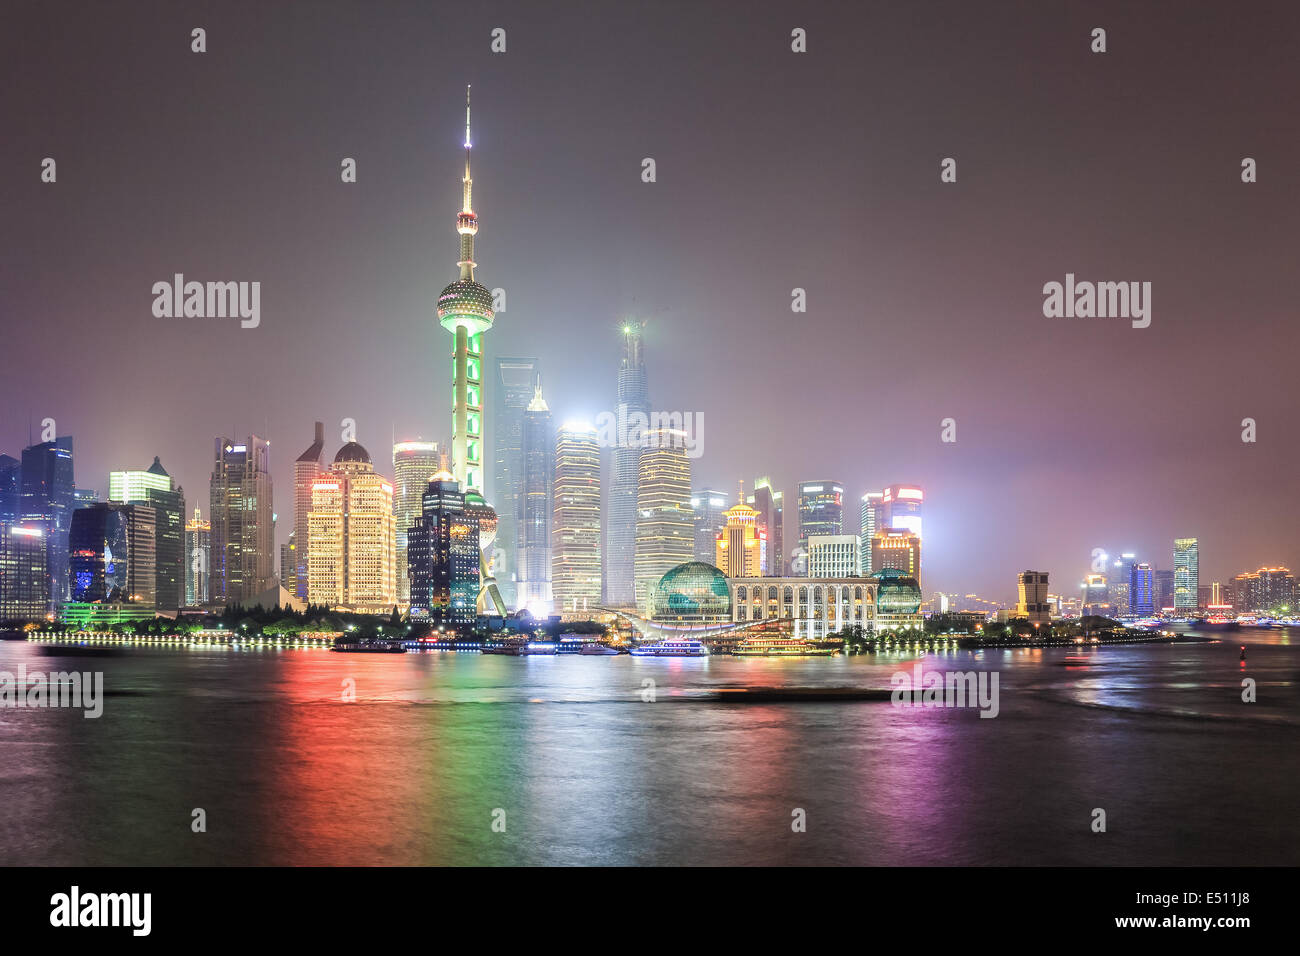 Skyline de Shanghai Pudong por la noche Foto de stock